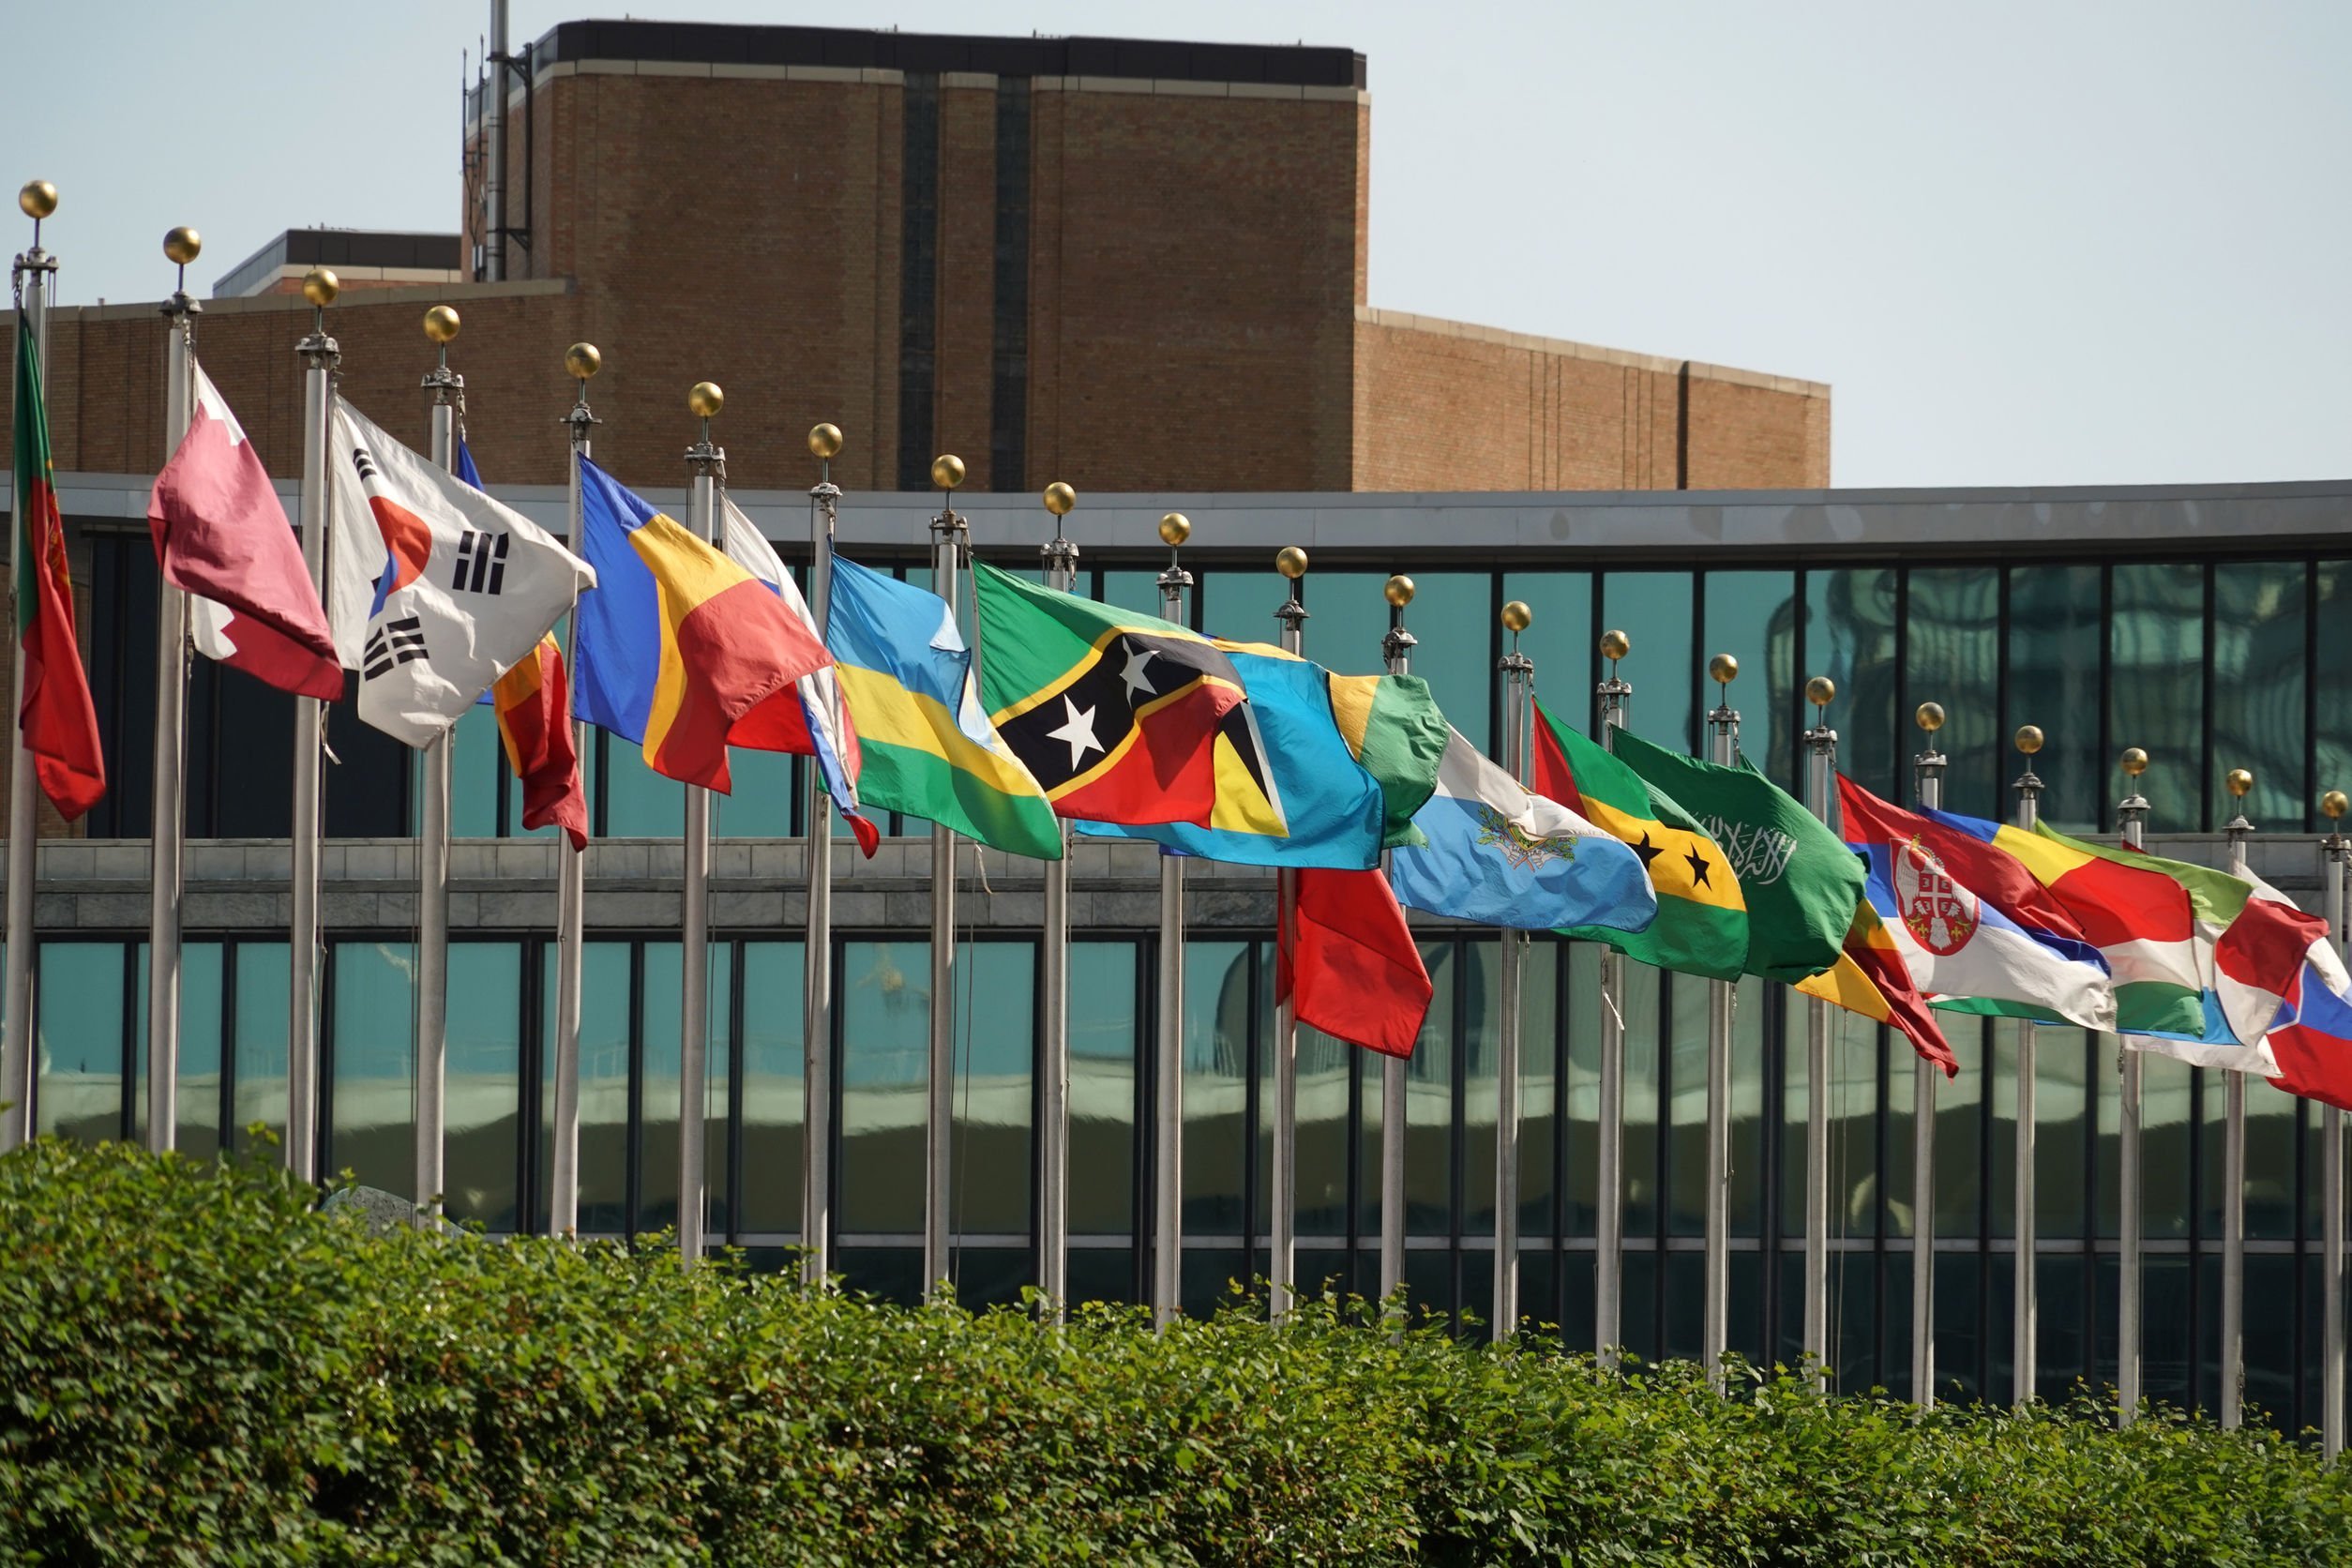 Bandeiras de países ao lado de um prédio